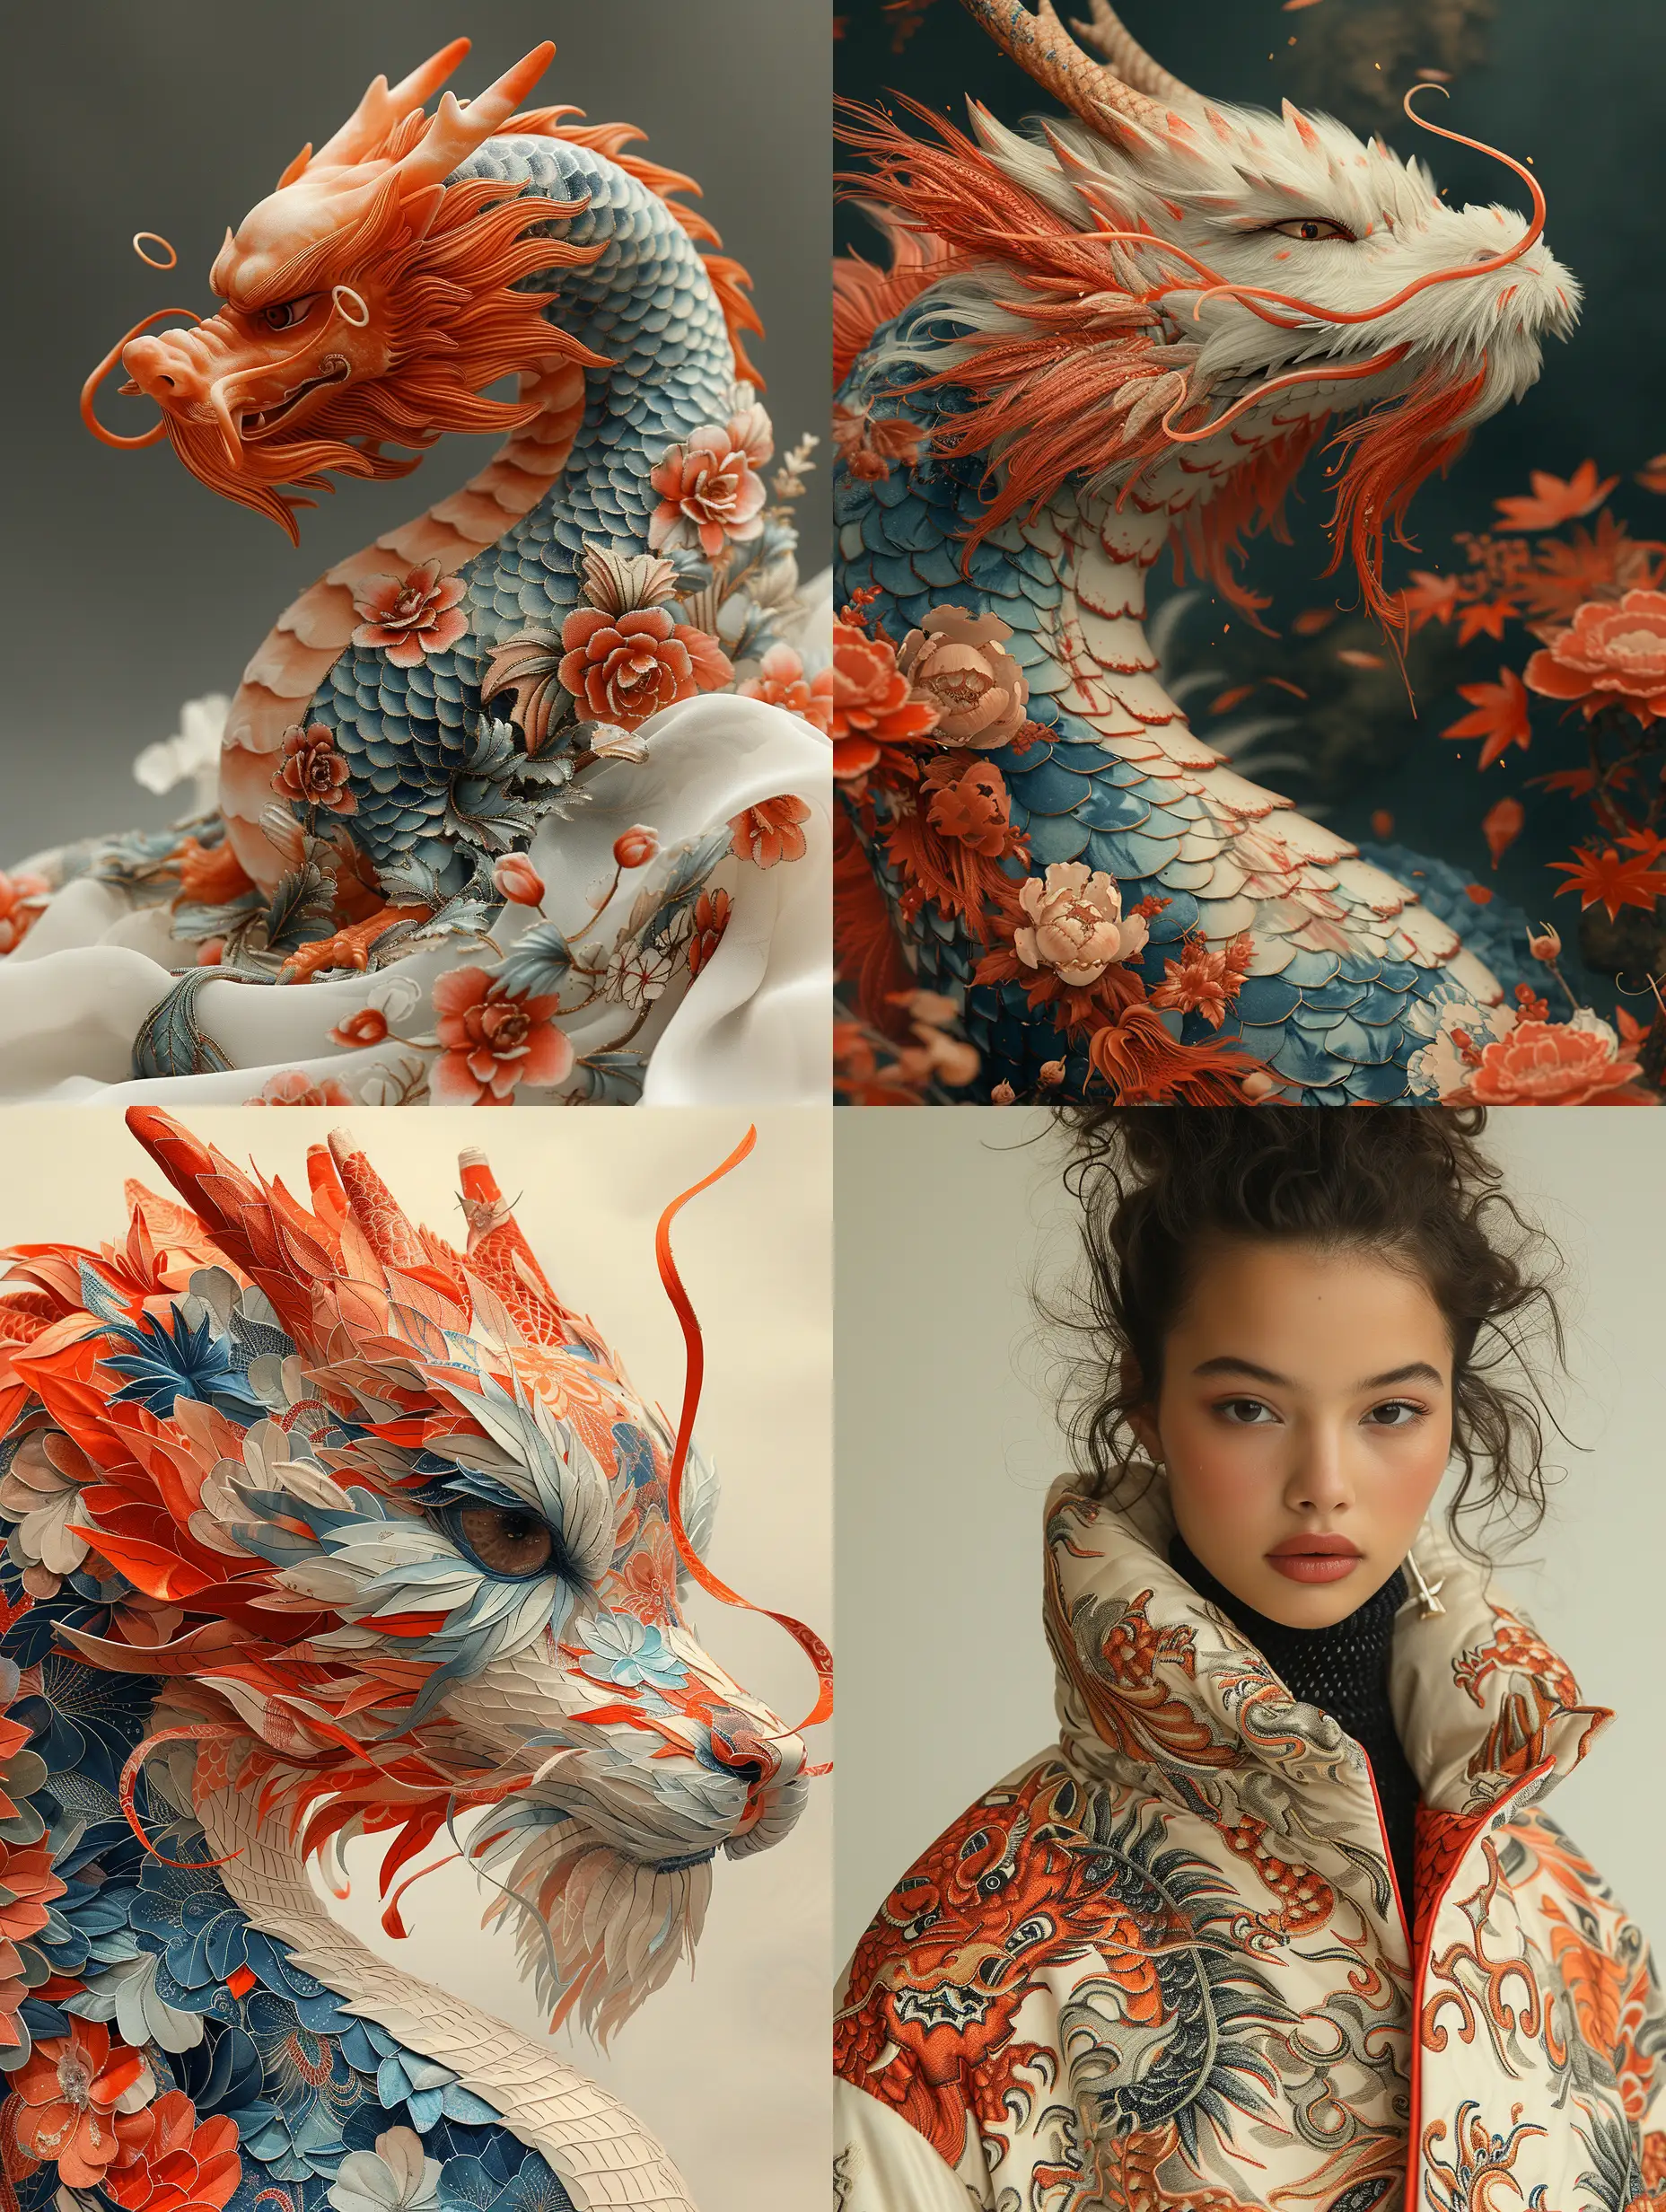 Adorable-Indonesian-Dragon-Print-Clothing-Designs-by-Cartier-Cristobal-Balenciaga-and-Giorgio-Armani